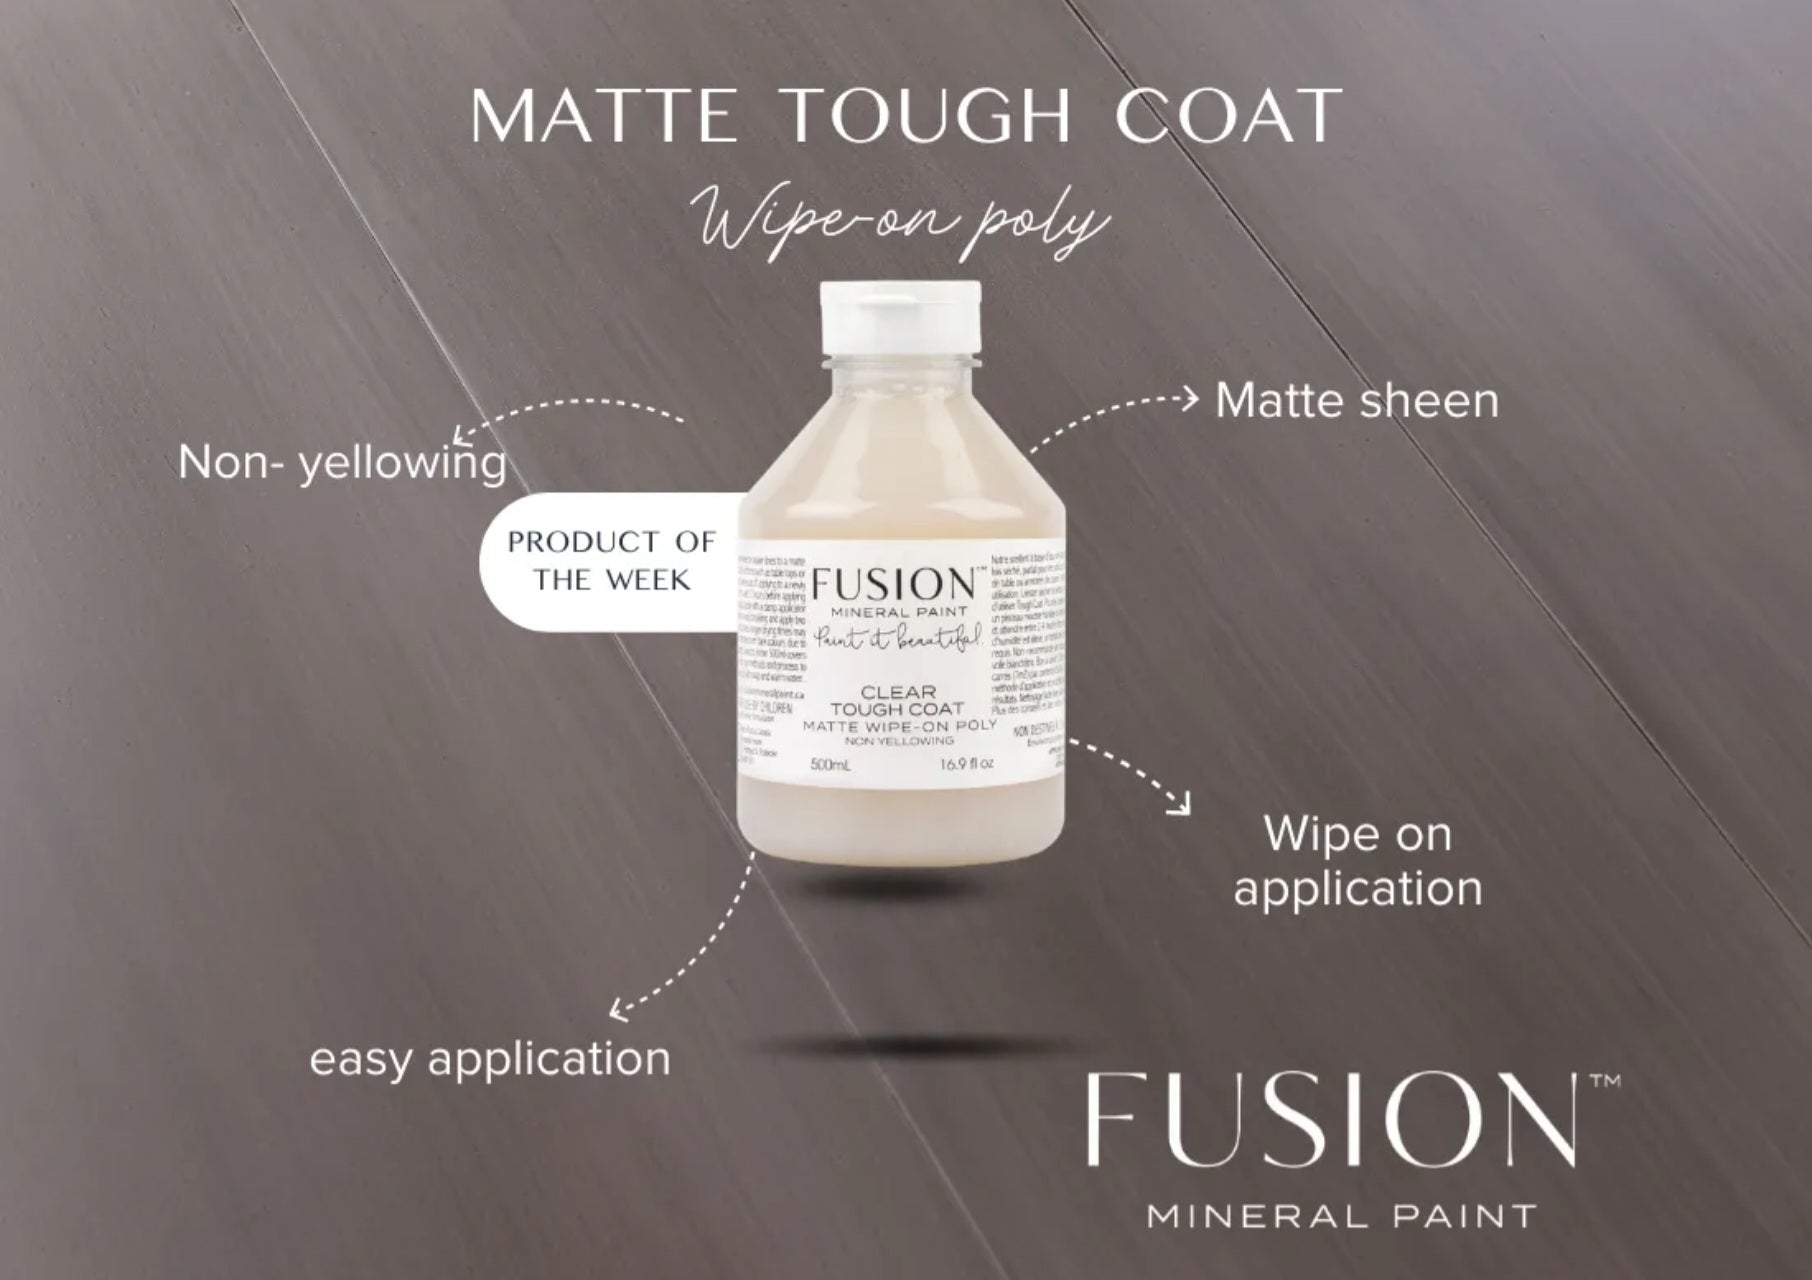 Fusion Mineral Paint Matte Tough Coat Characteristics